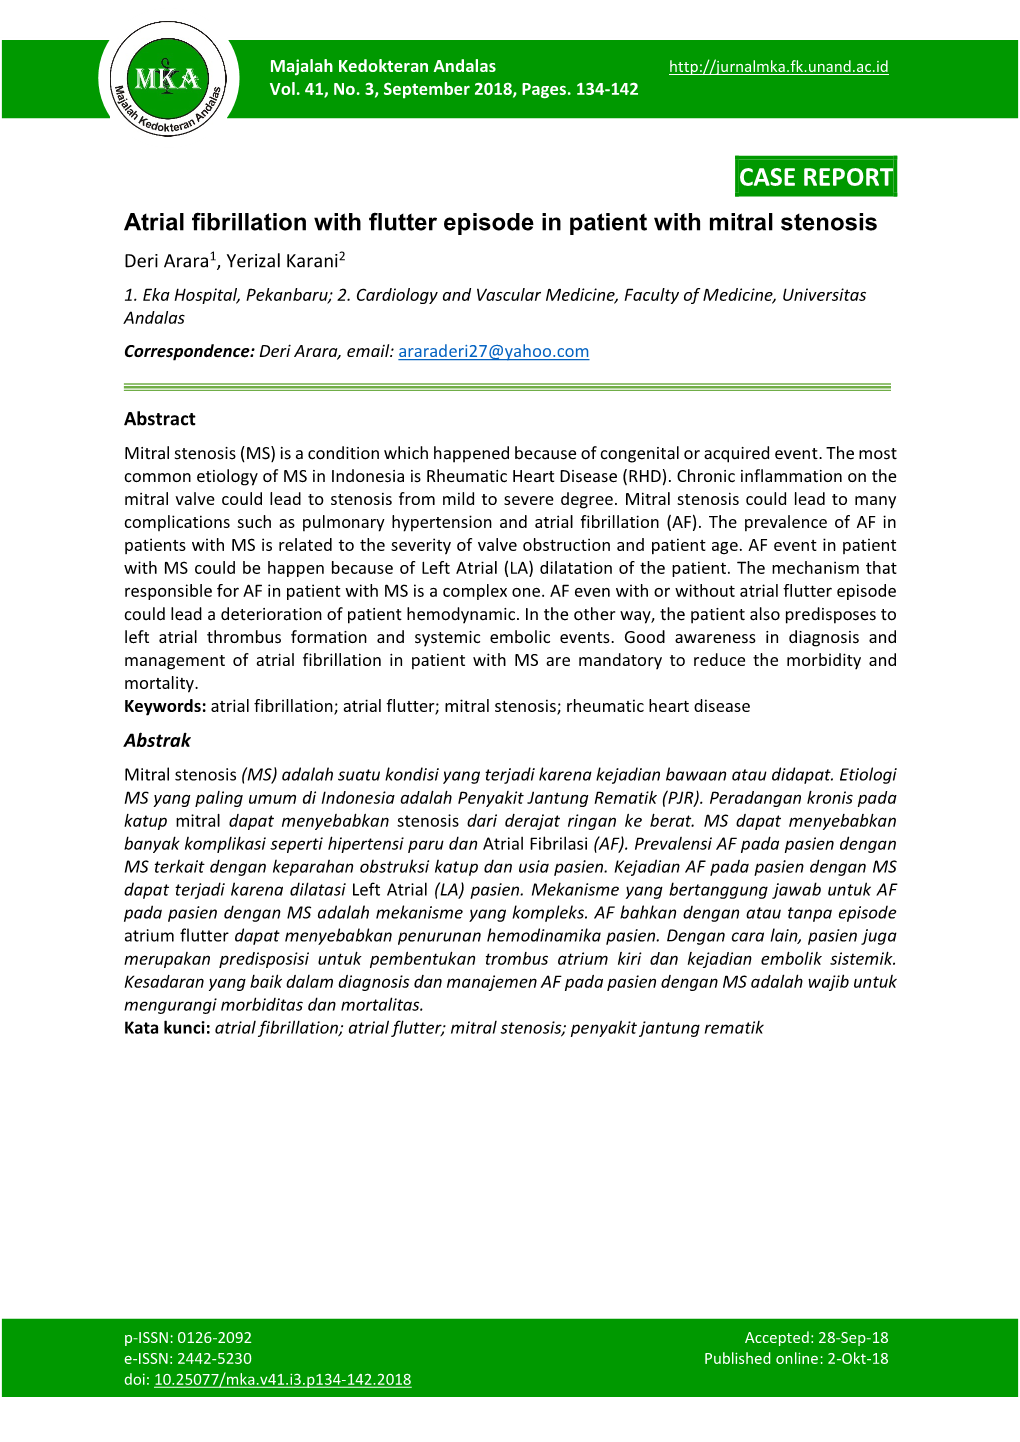 Atrial Fibrillation with Flutter Episode in Patient with Mitral Stenosis Deri Arara1, Yerizal Karani2 1